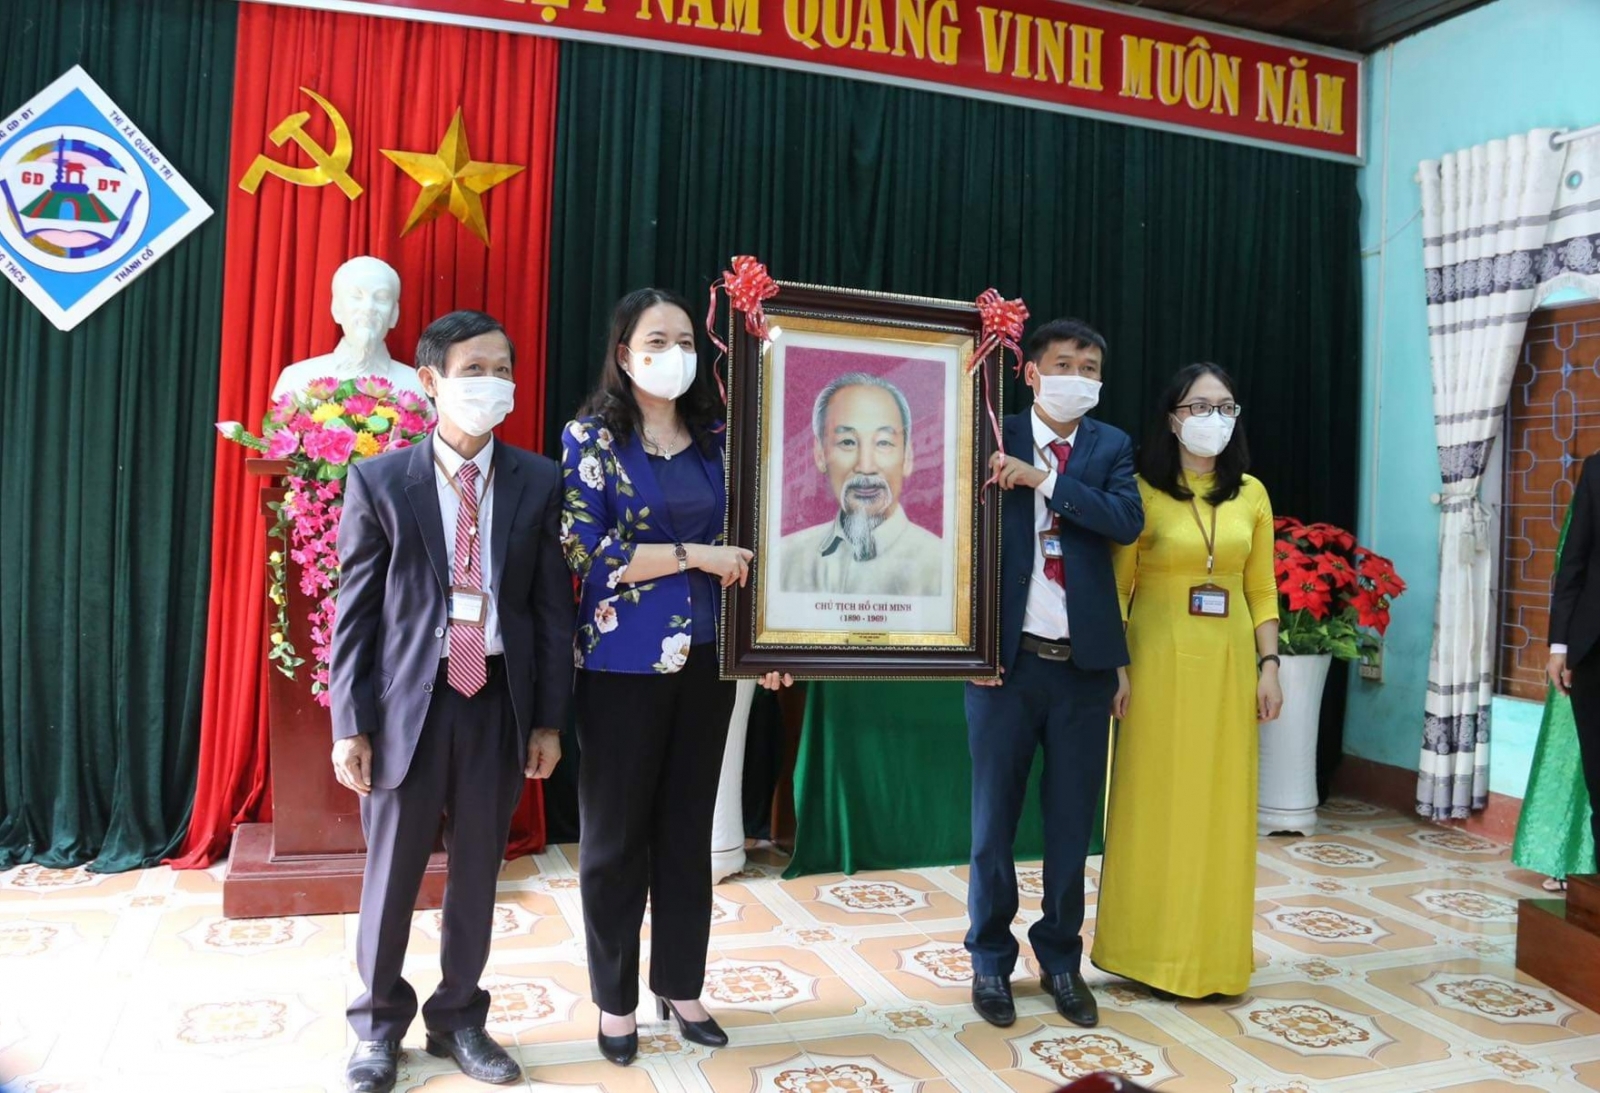 Phó Chủ tịch nước thăm ngôi trường lá cờ đầu cấp Trung học cơ sở tại Quảng Trị - Ảnh minh hoạ 2